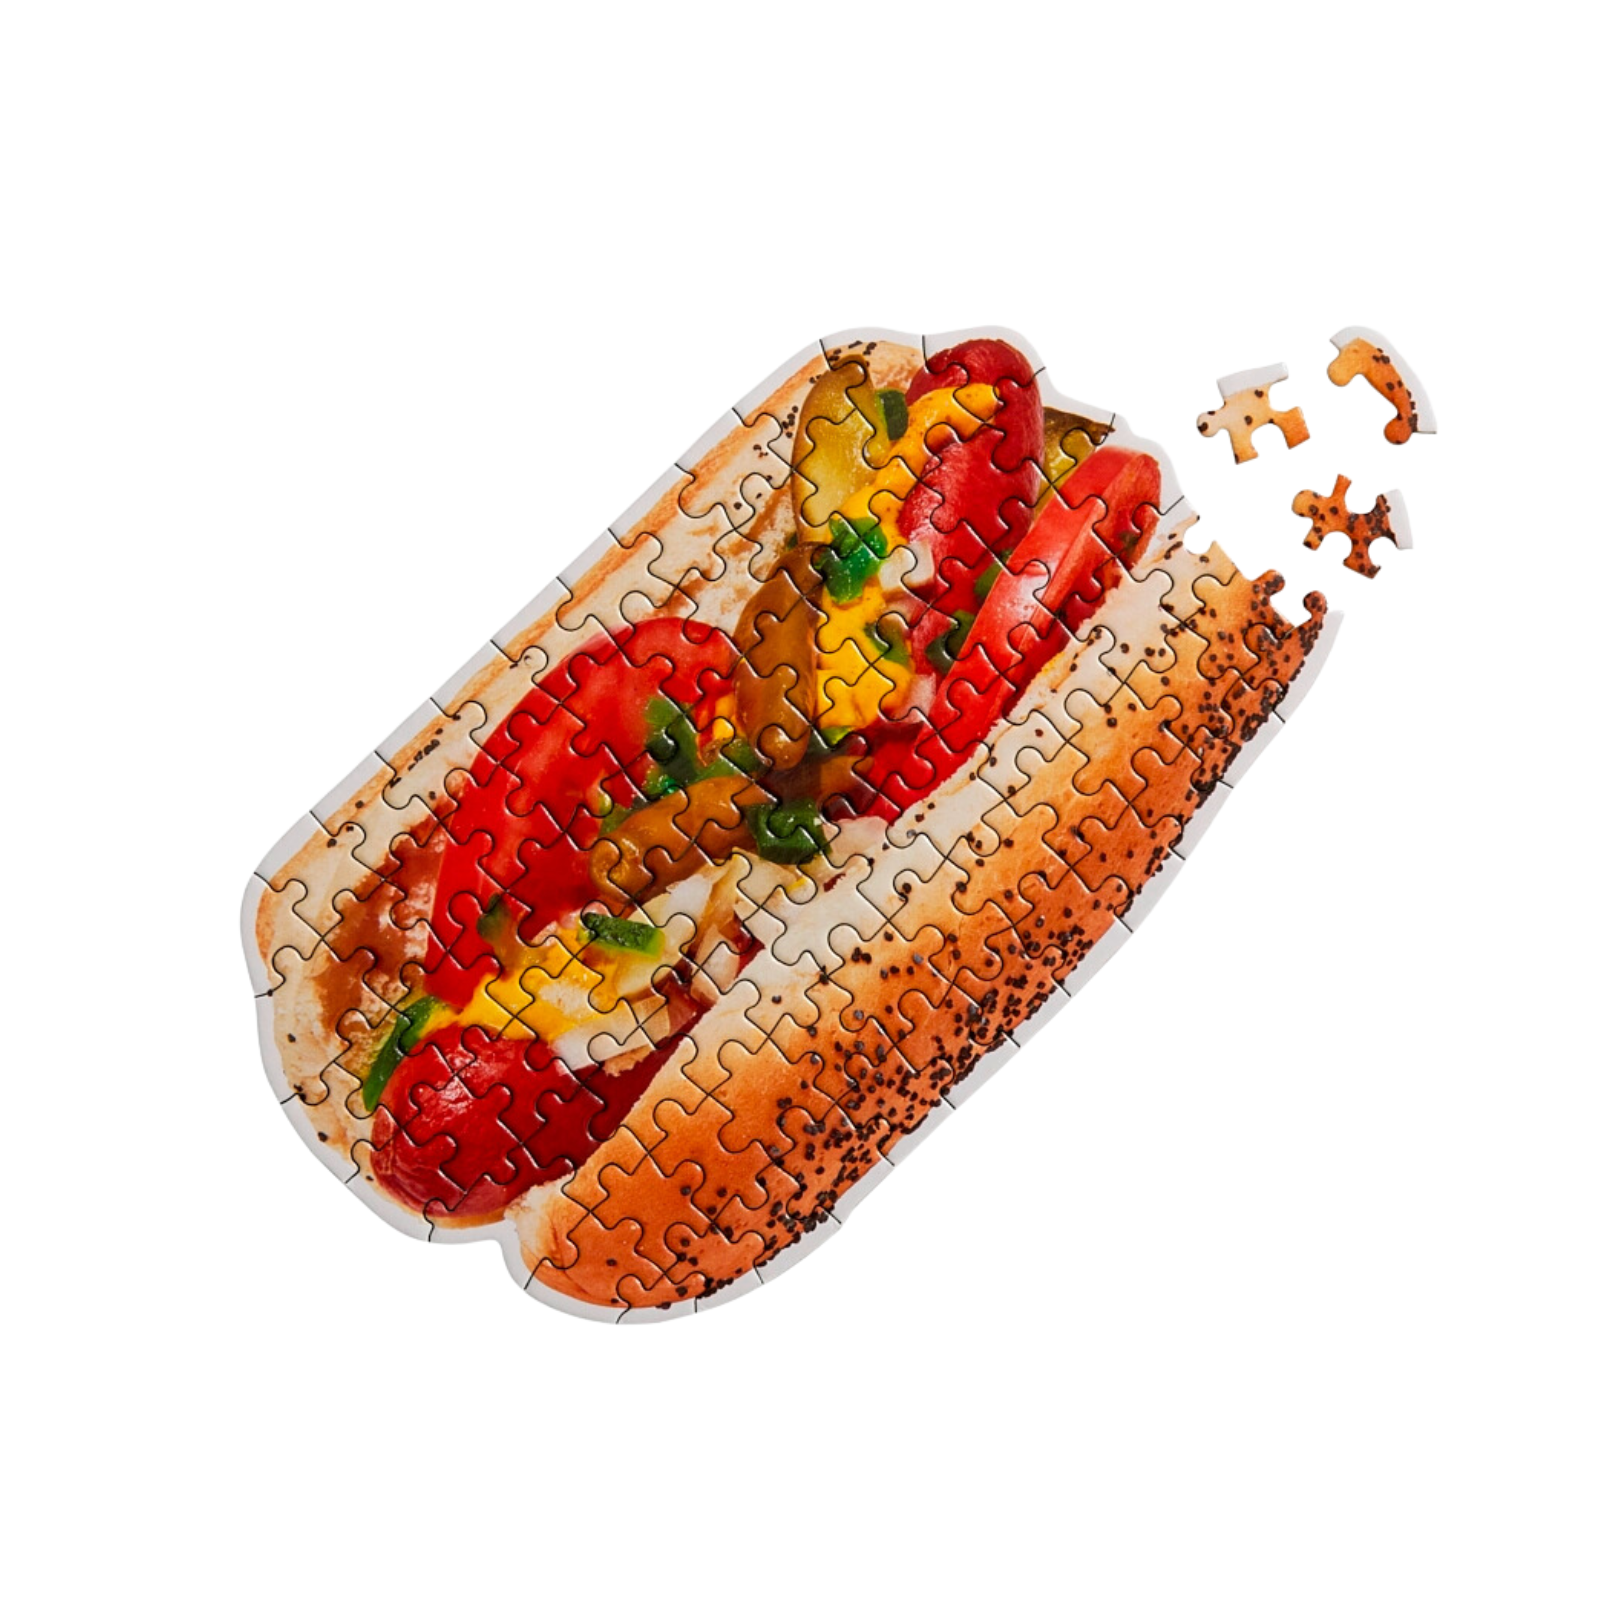 Chicago Hot Dog Puzzle